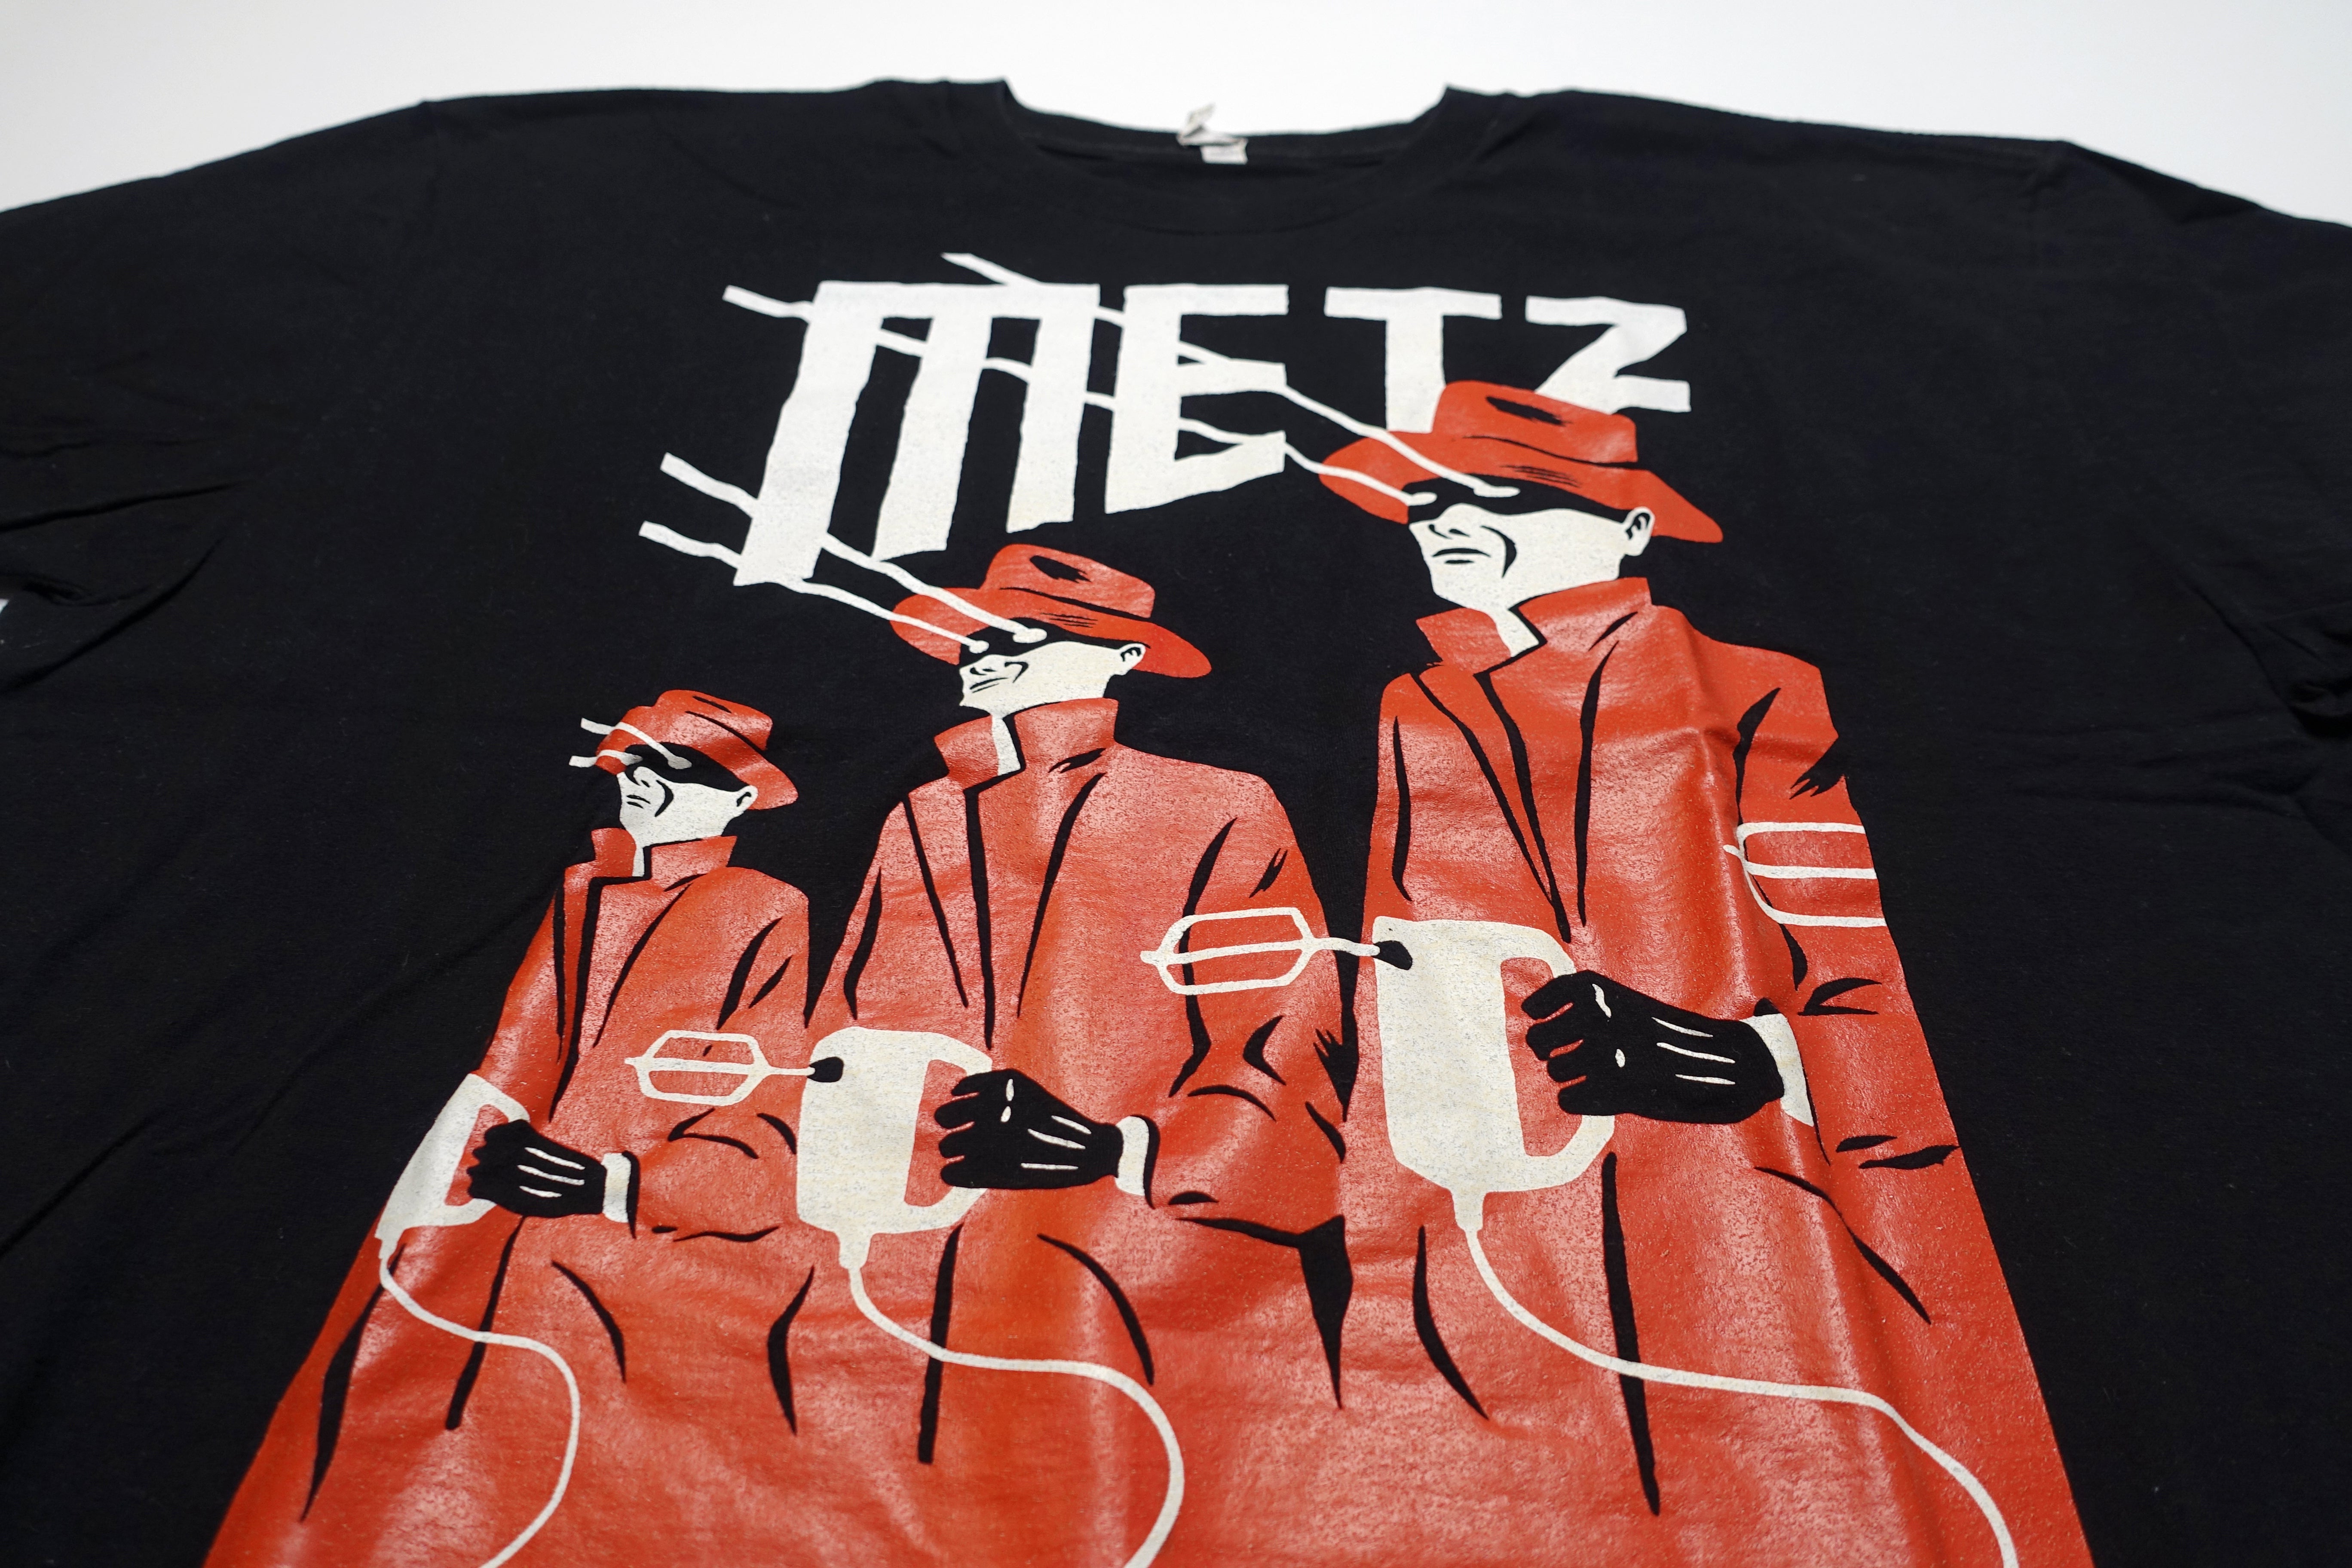 METZ - Igor 2012 Tour Shirt Size XL